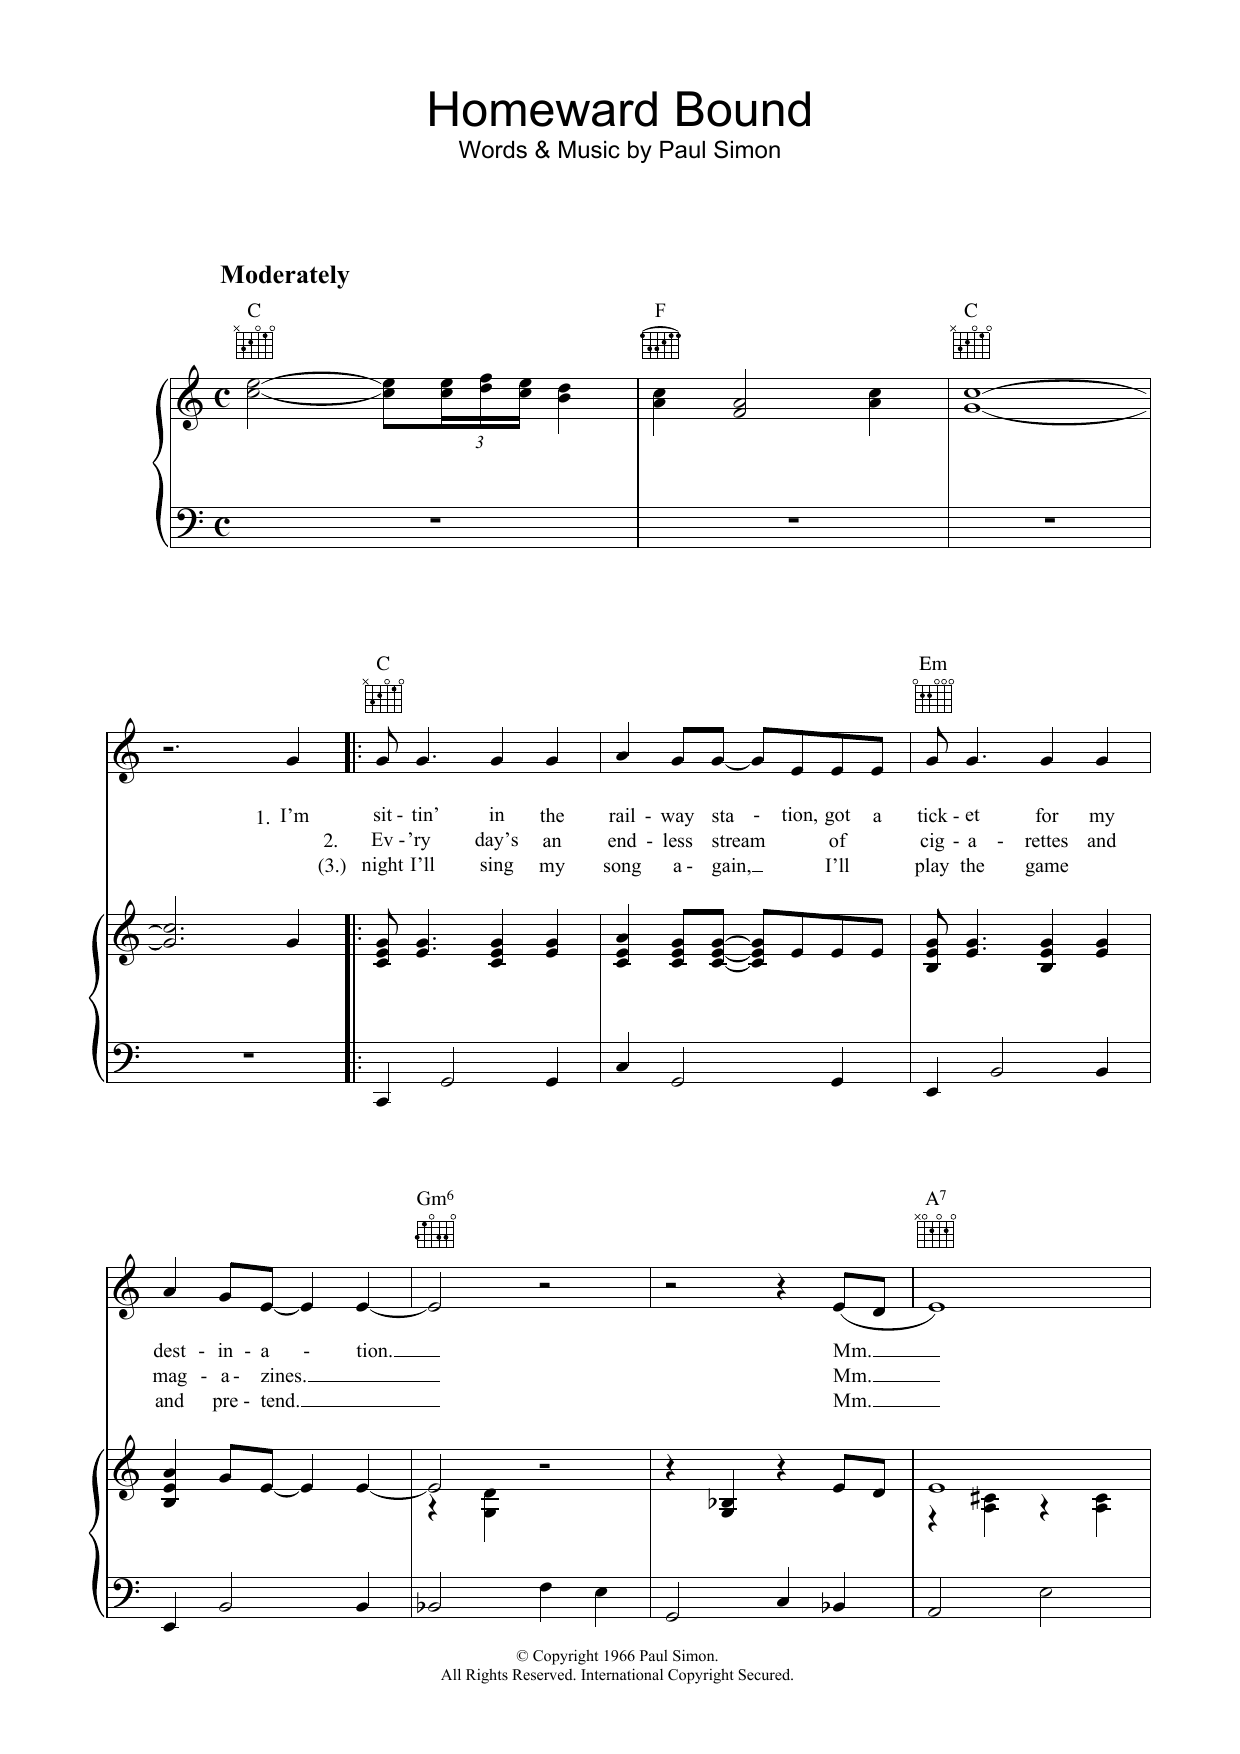 Simon & Garfunkel Homeward Bound Sheet Music Notes & Chords for Ukulele Lyrics & Chords - Download or Print PDF